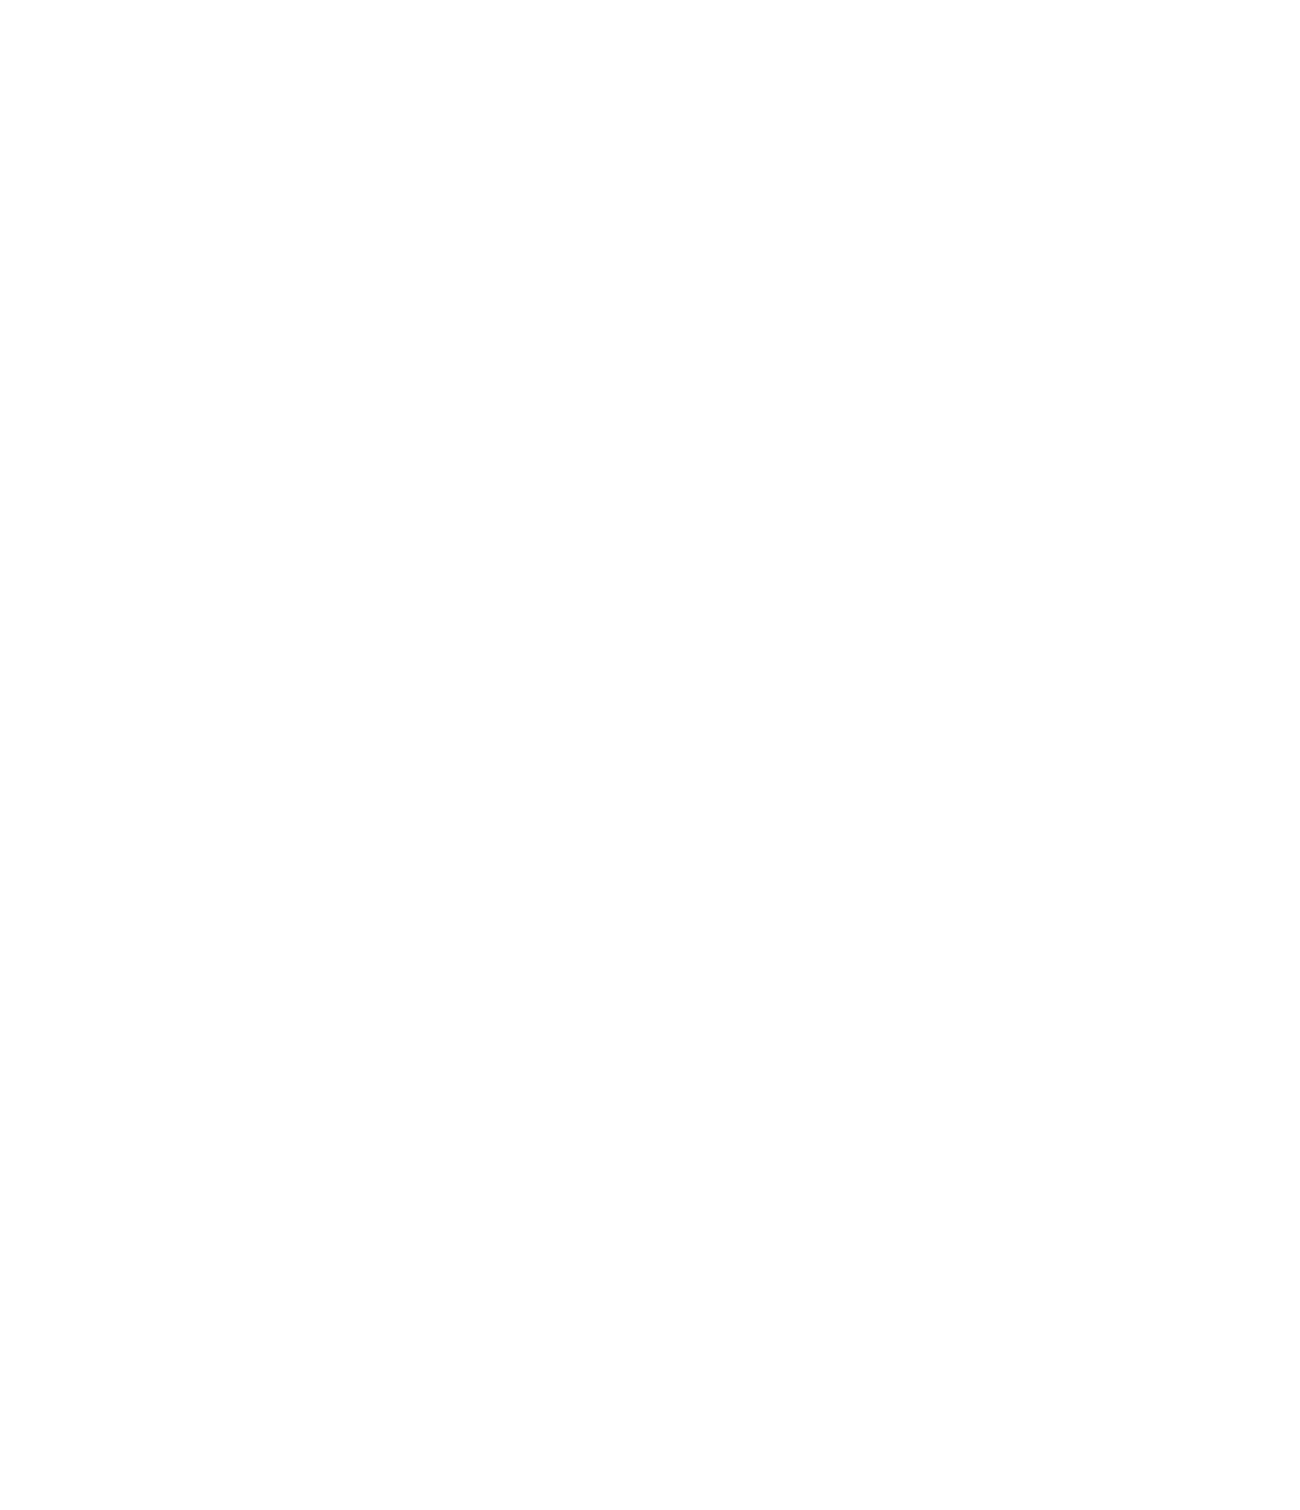 Sarcos Technology and Robotics logo pour fonds sombres (PNG transparent)